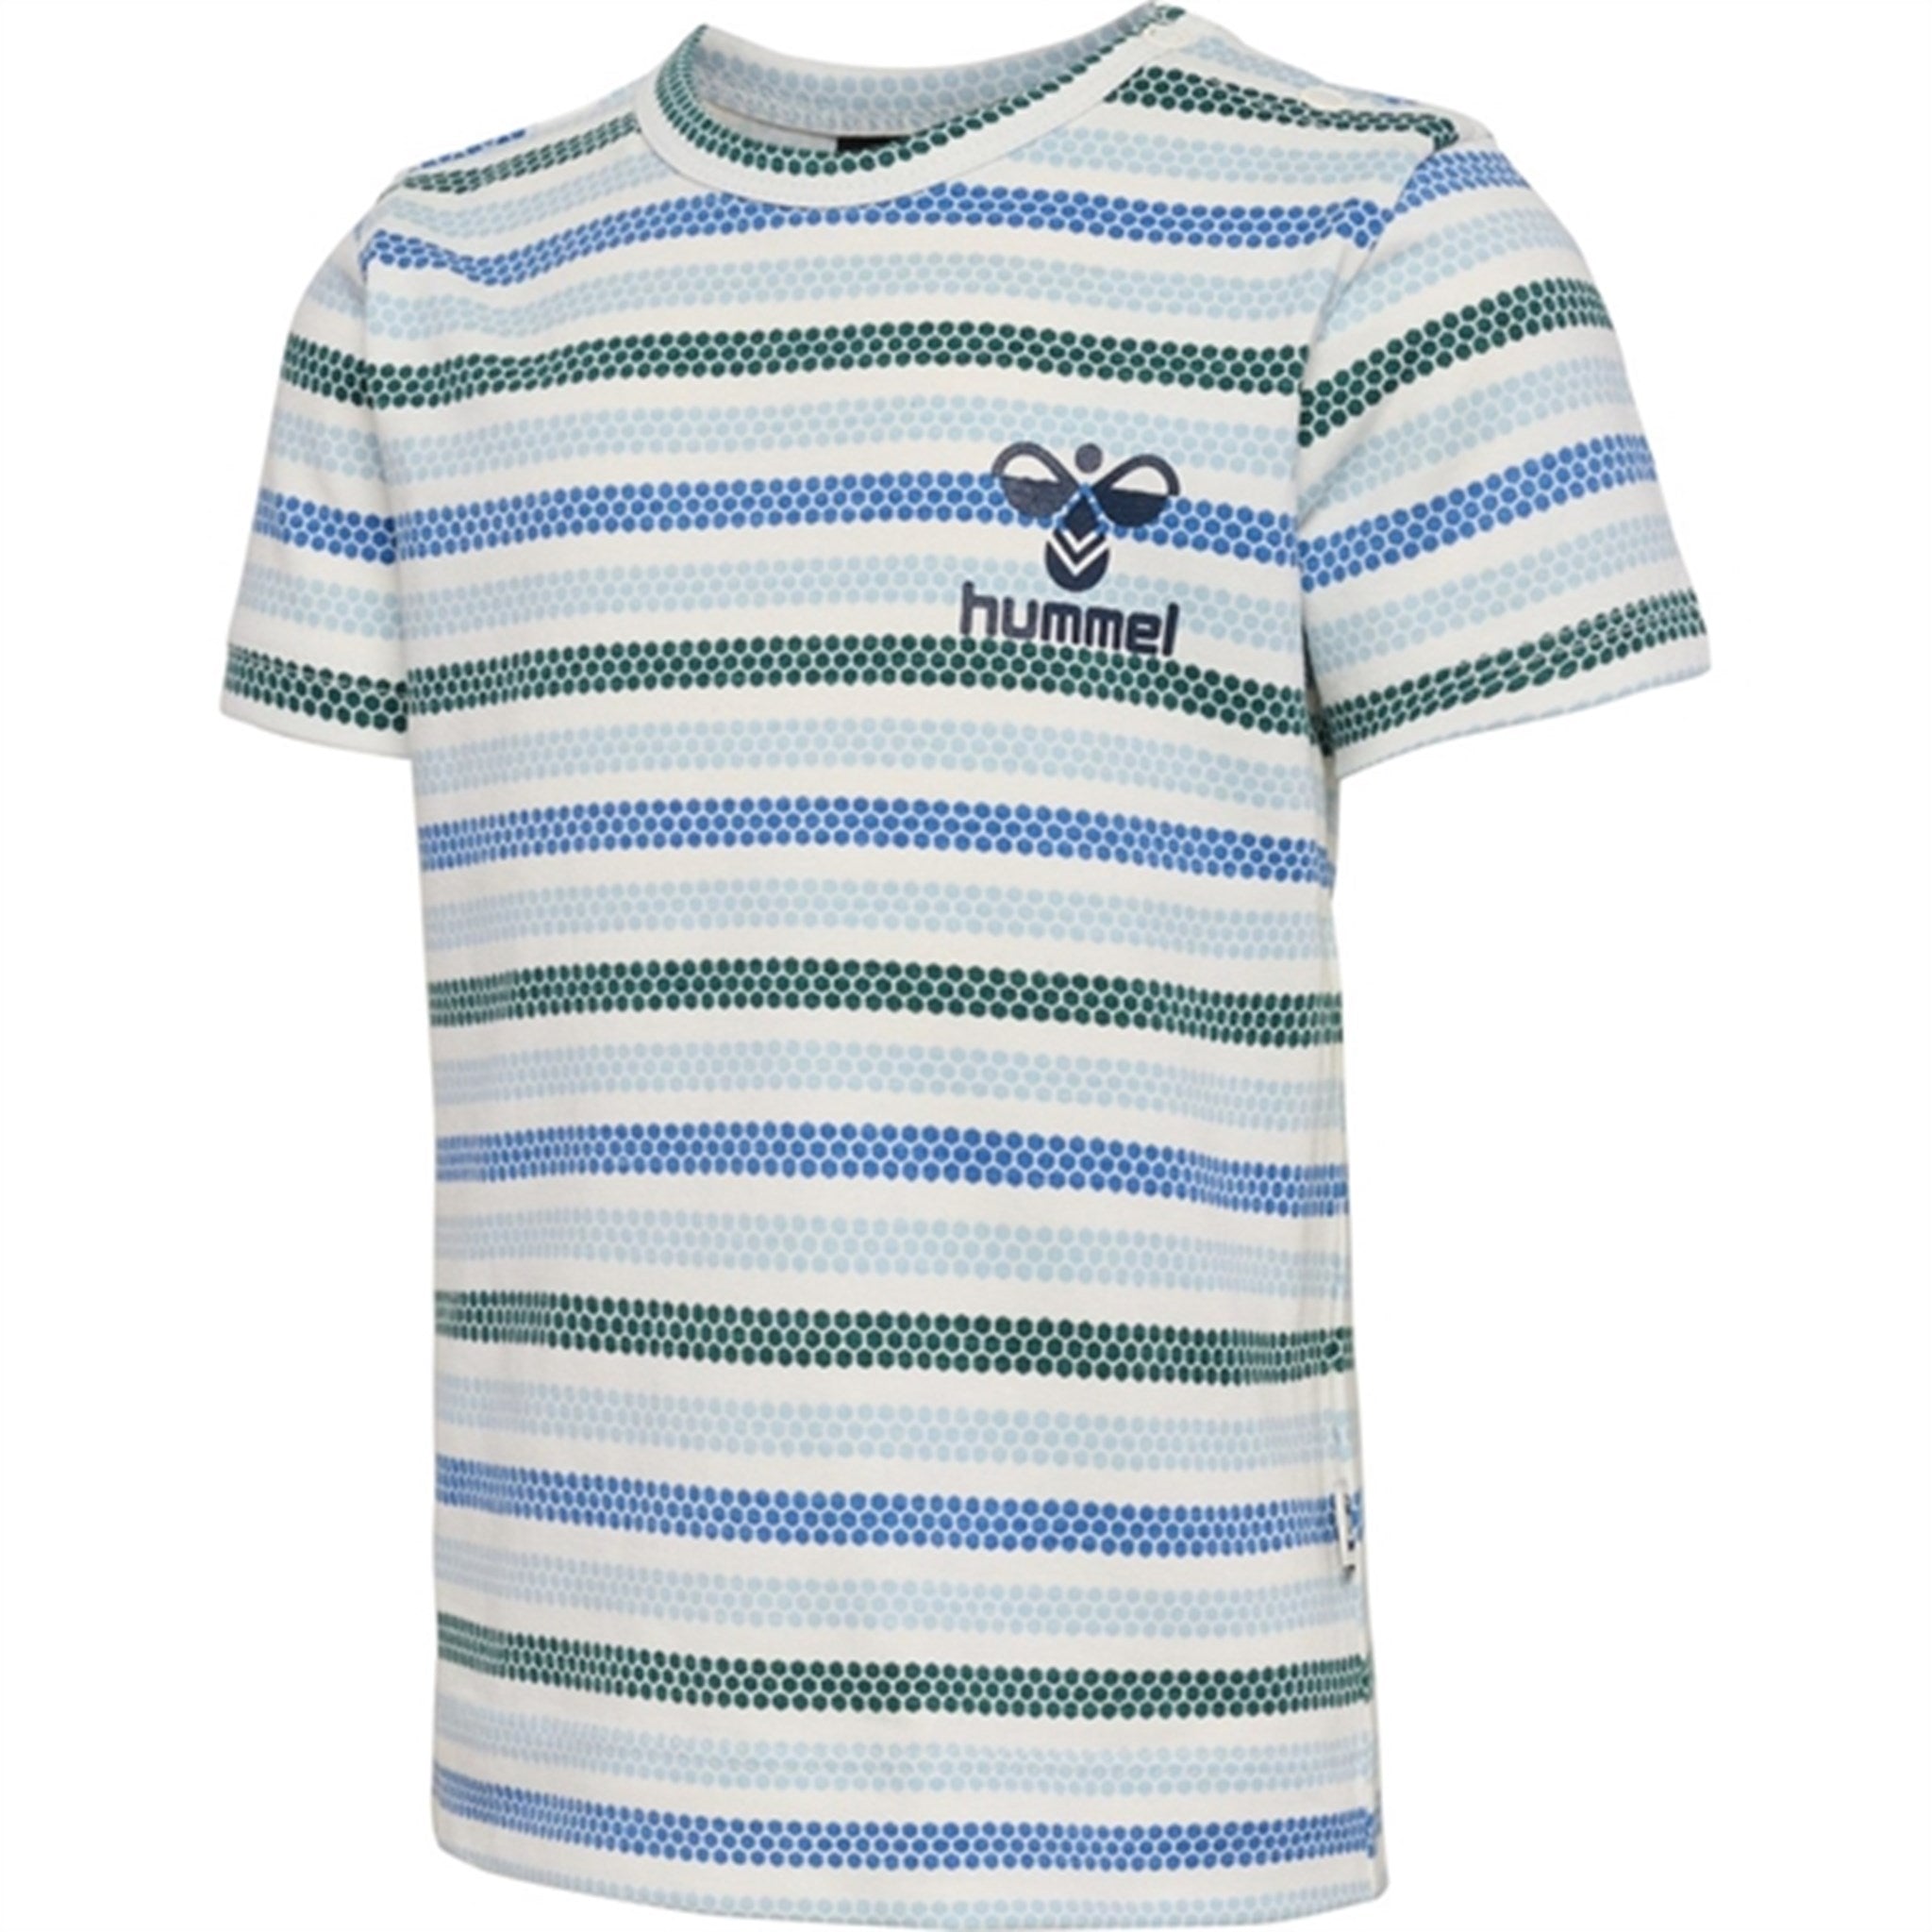 Hummel Marshmallow Torini T-shirt S/S 3